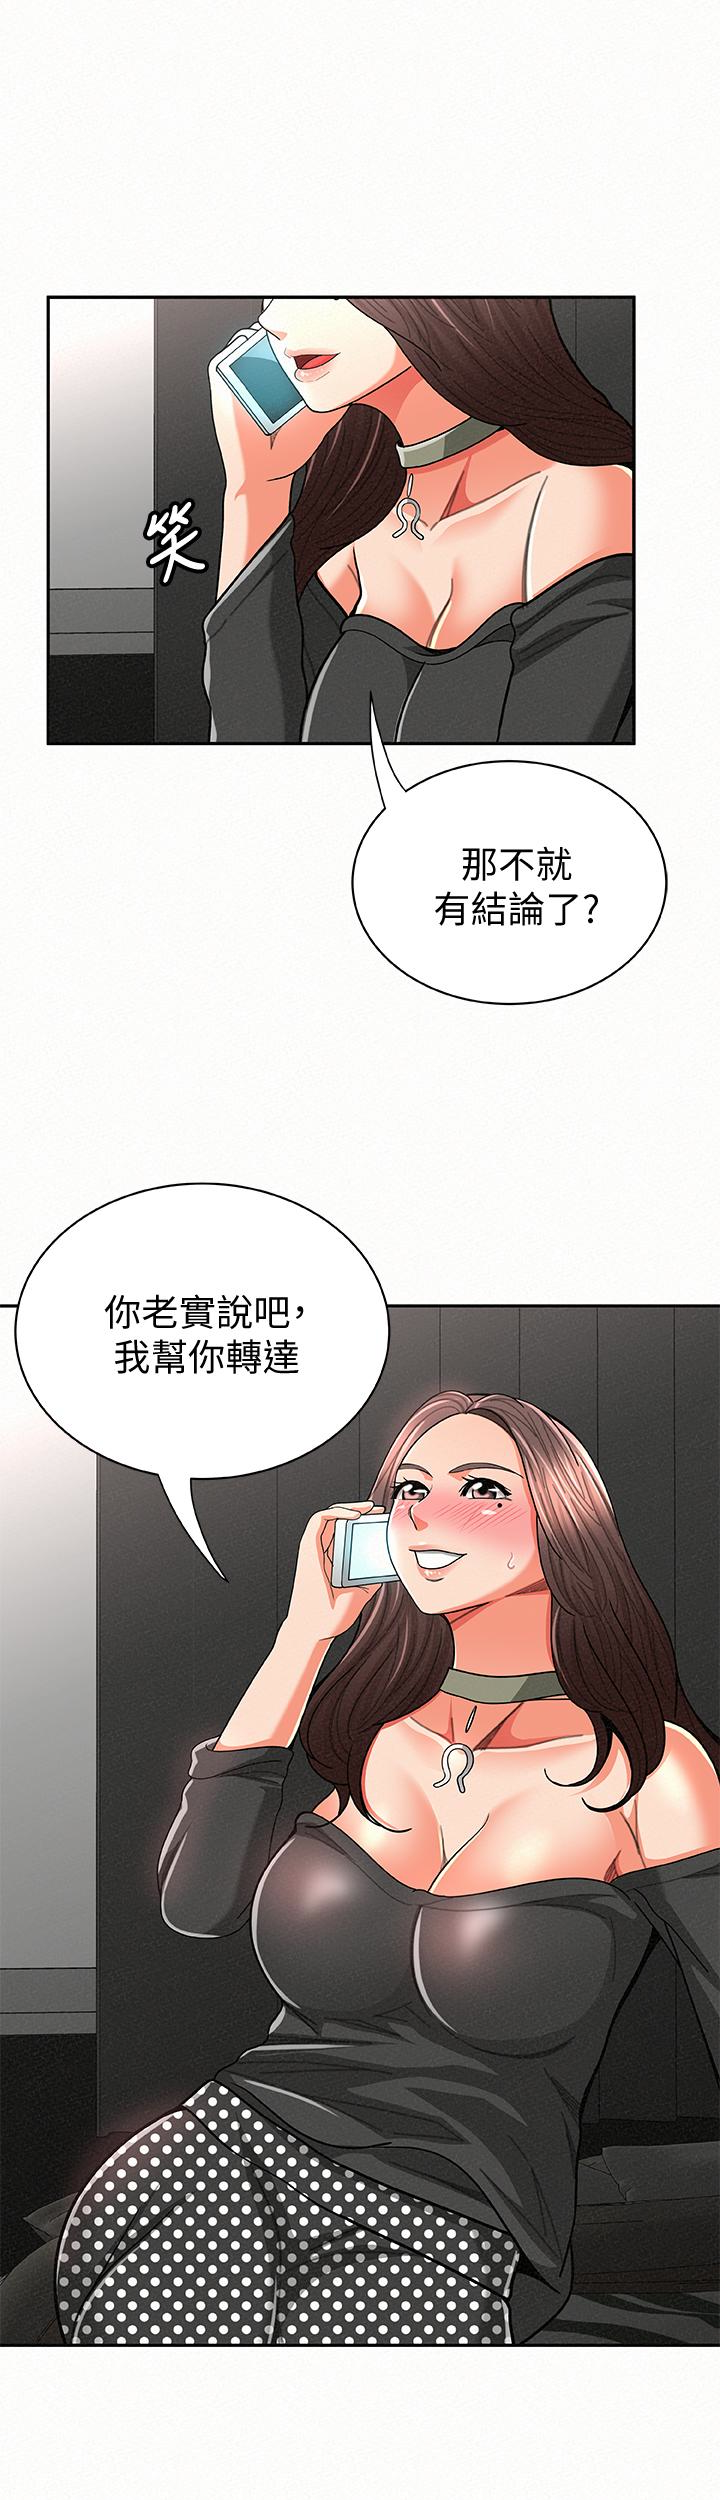 韩国污漫画 報告夫人 第30话-挑逗老公的景淑 6